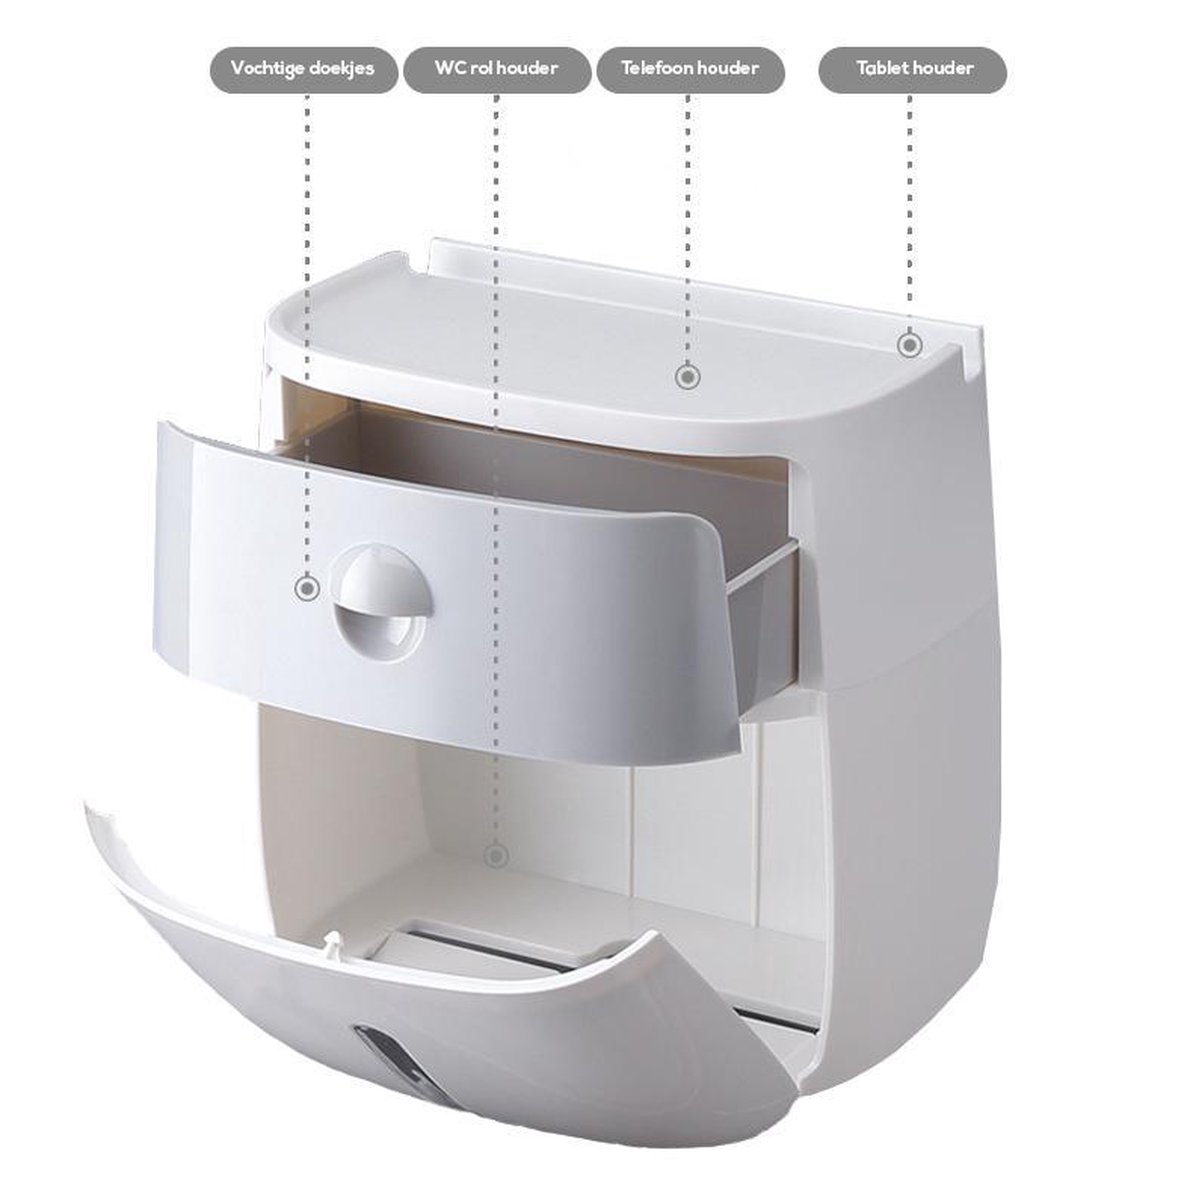 bol.com | One Blend Toiletrolhouder Premium 2020 | Wc rolhouder met  standaard + handige lade |...